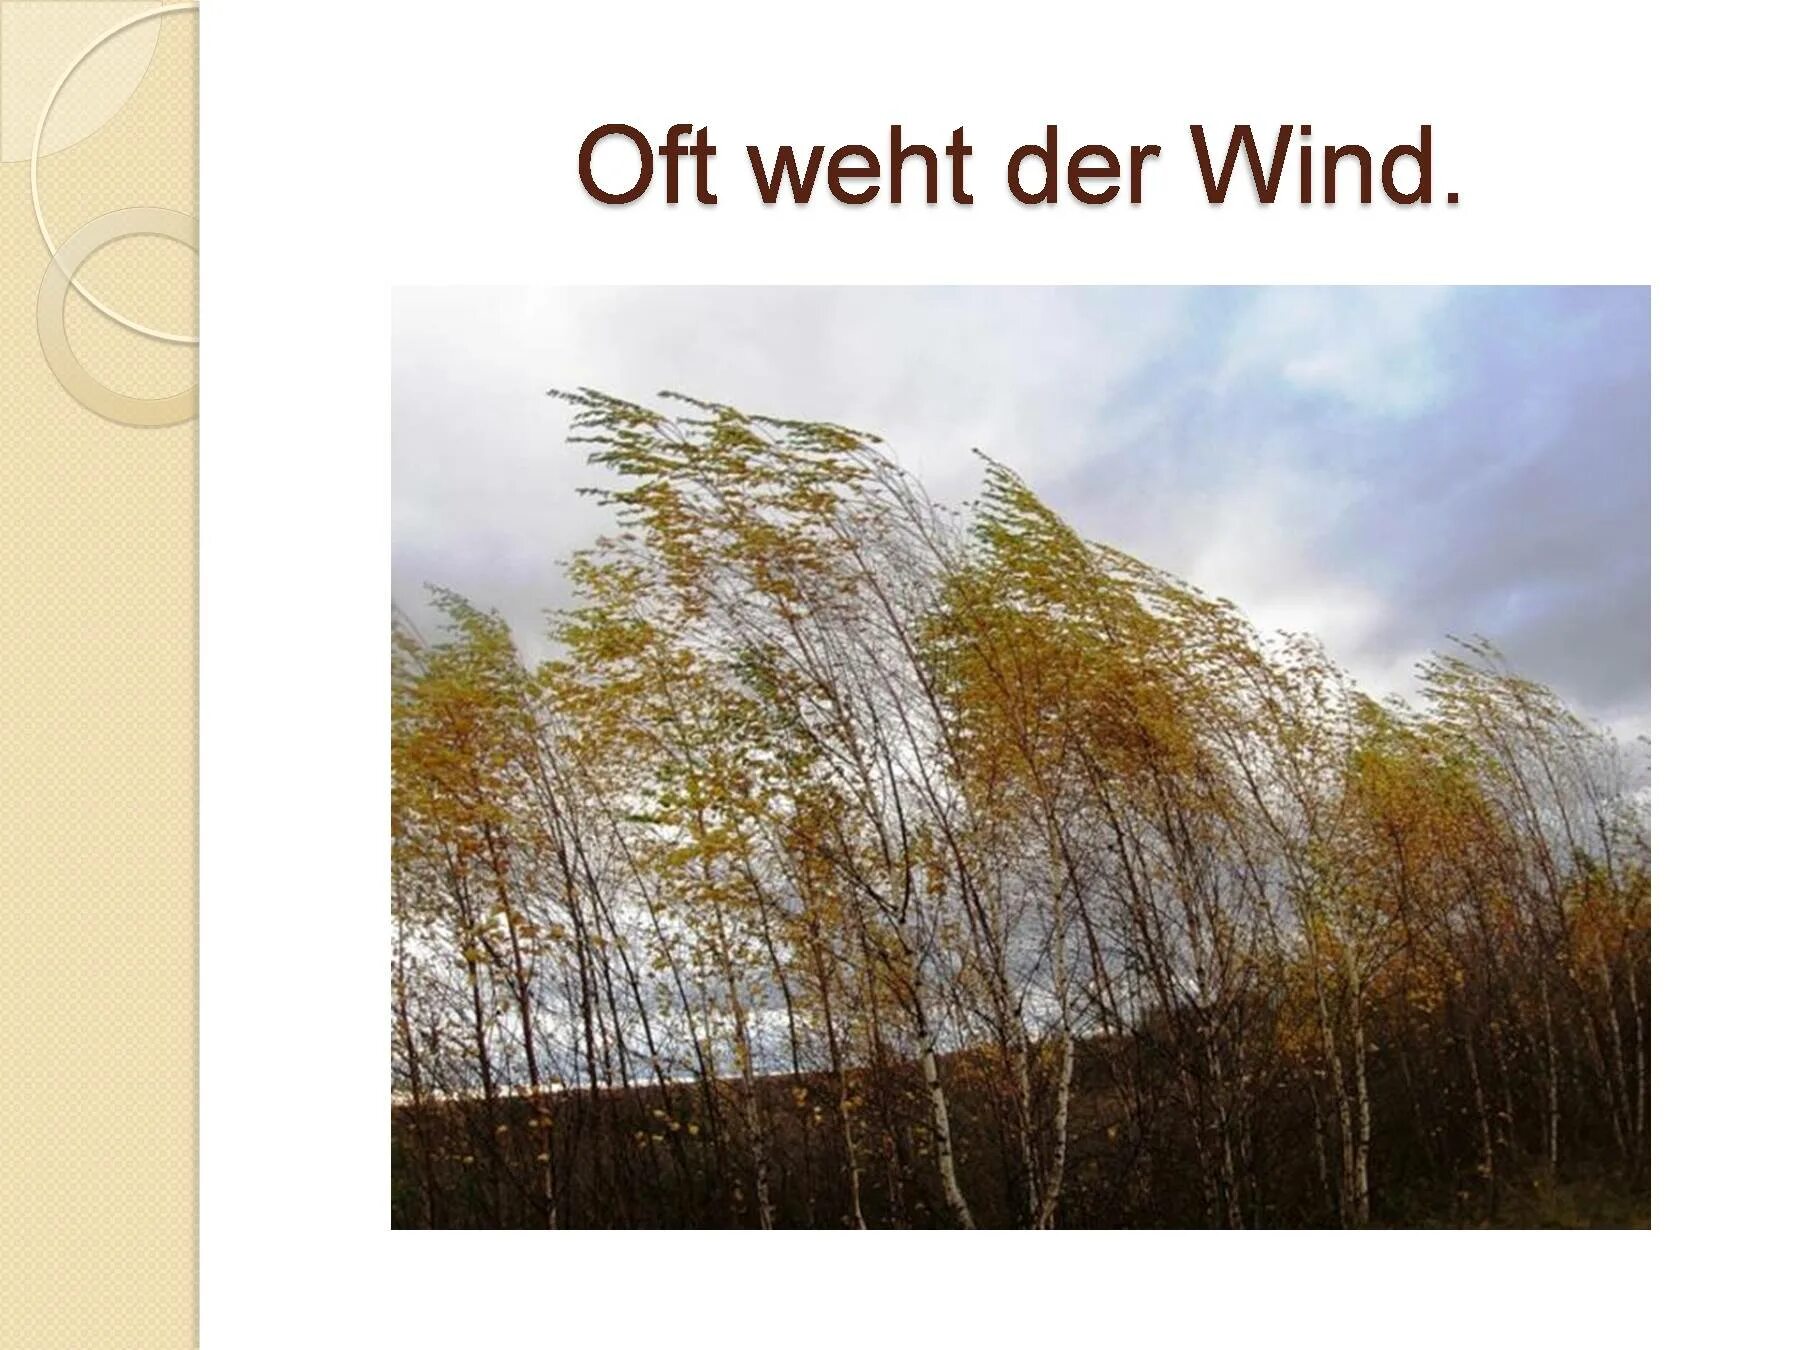 Сильный ветер осень. Сильный ветер осенью. Осень дует сильный ветер. Ветер верхушки деревьев.